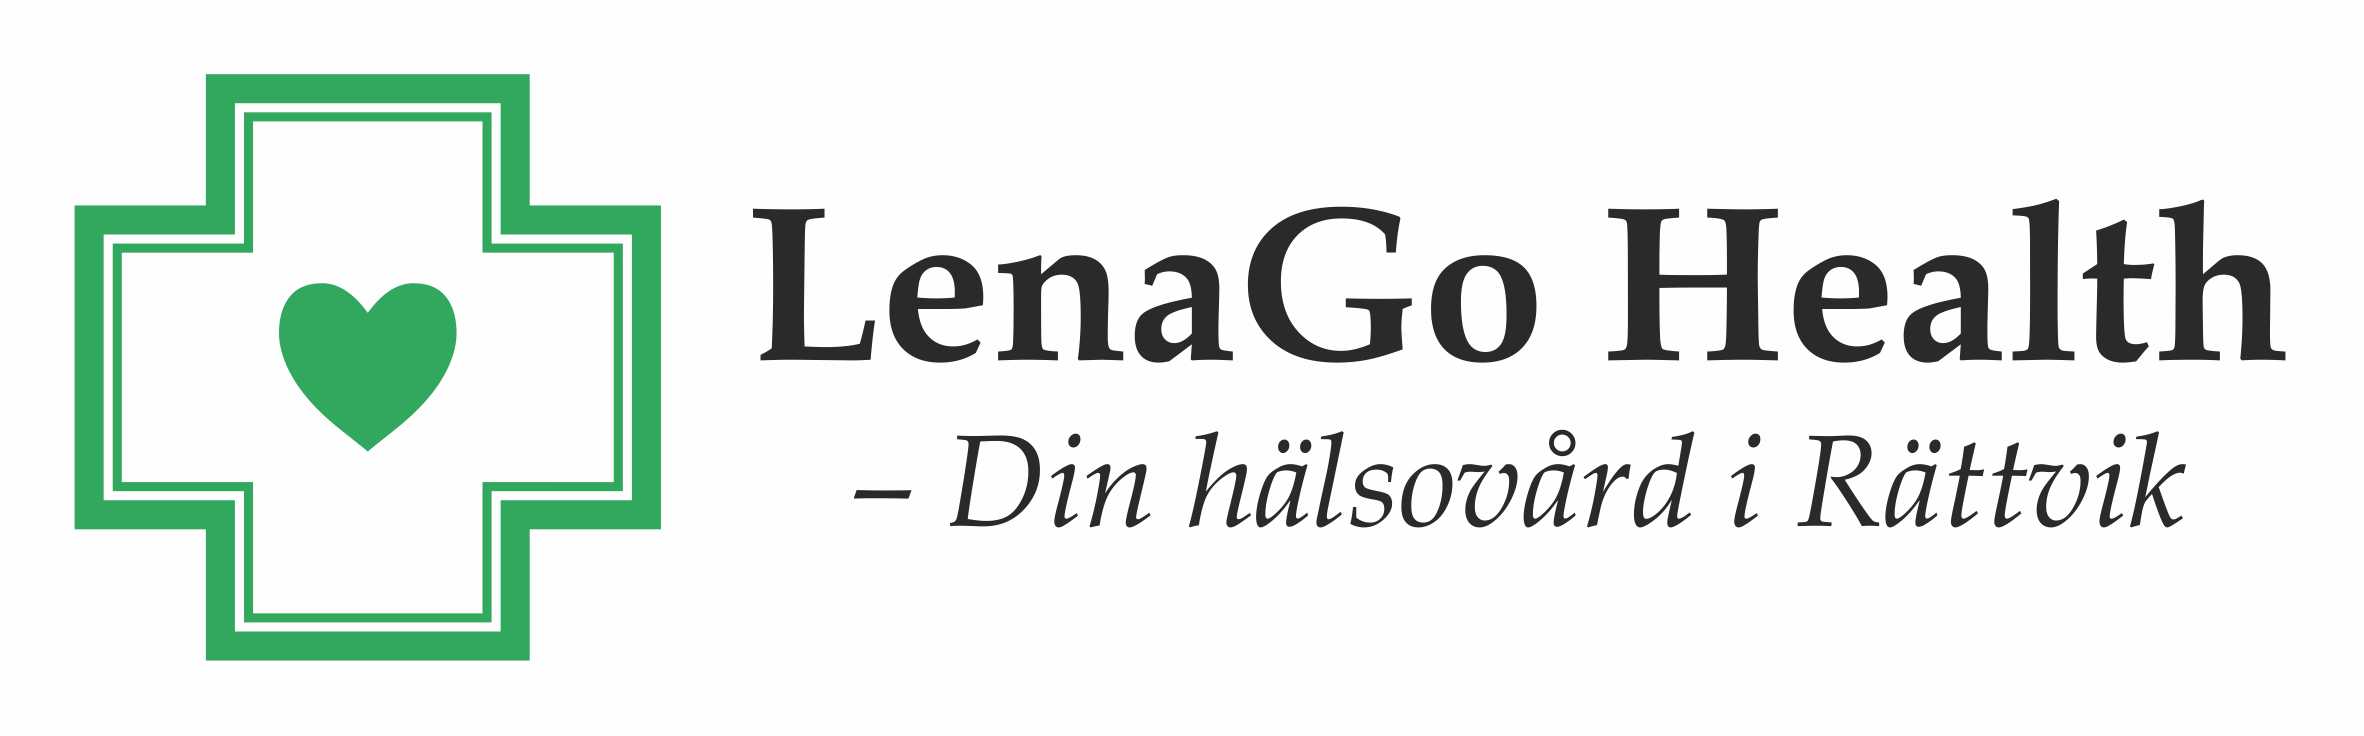 LenaGo Health - Din hälsovård i Rättvik